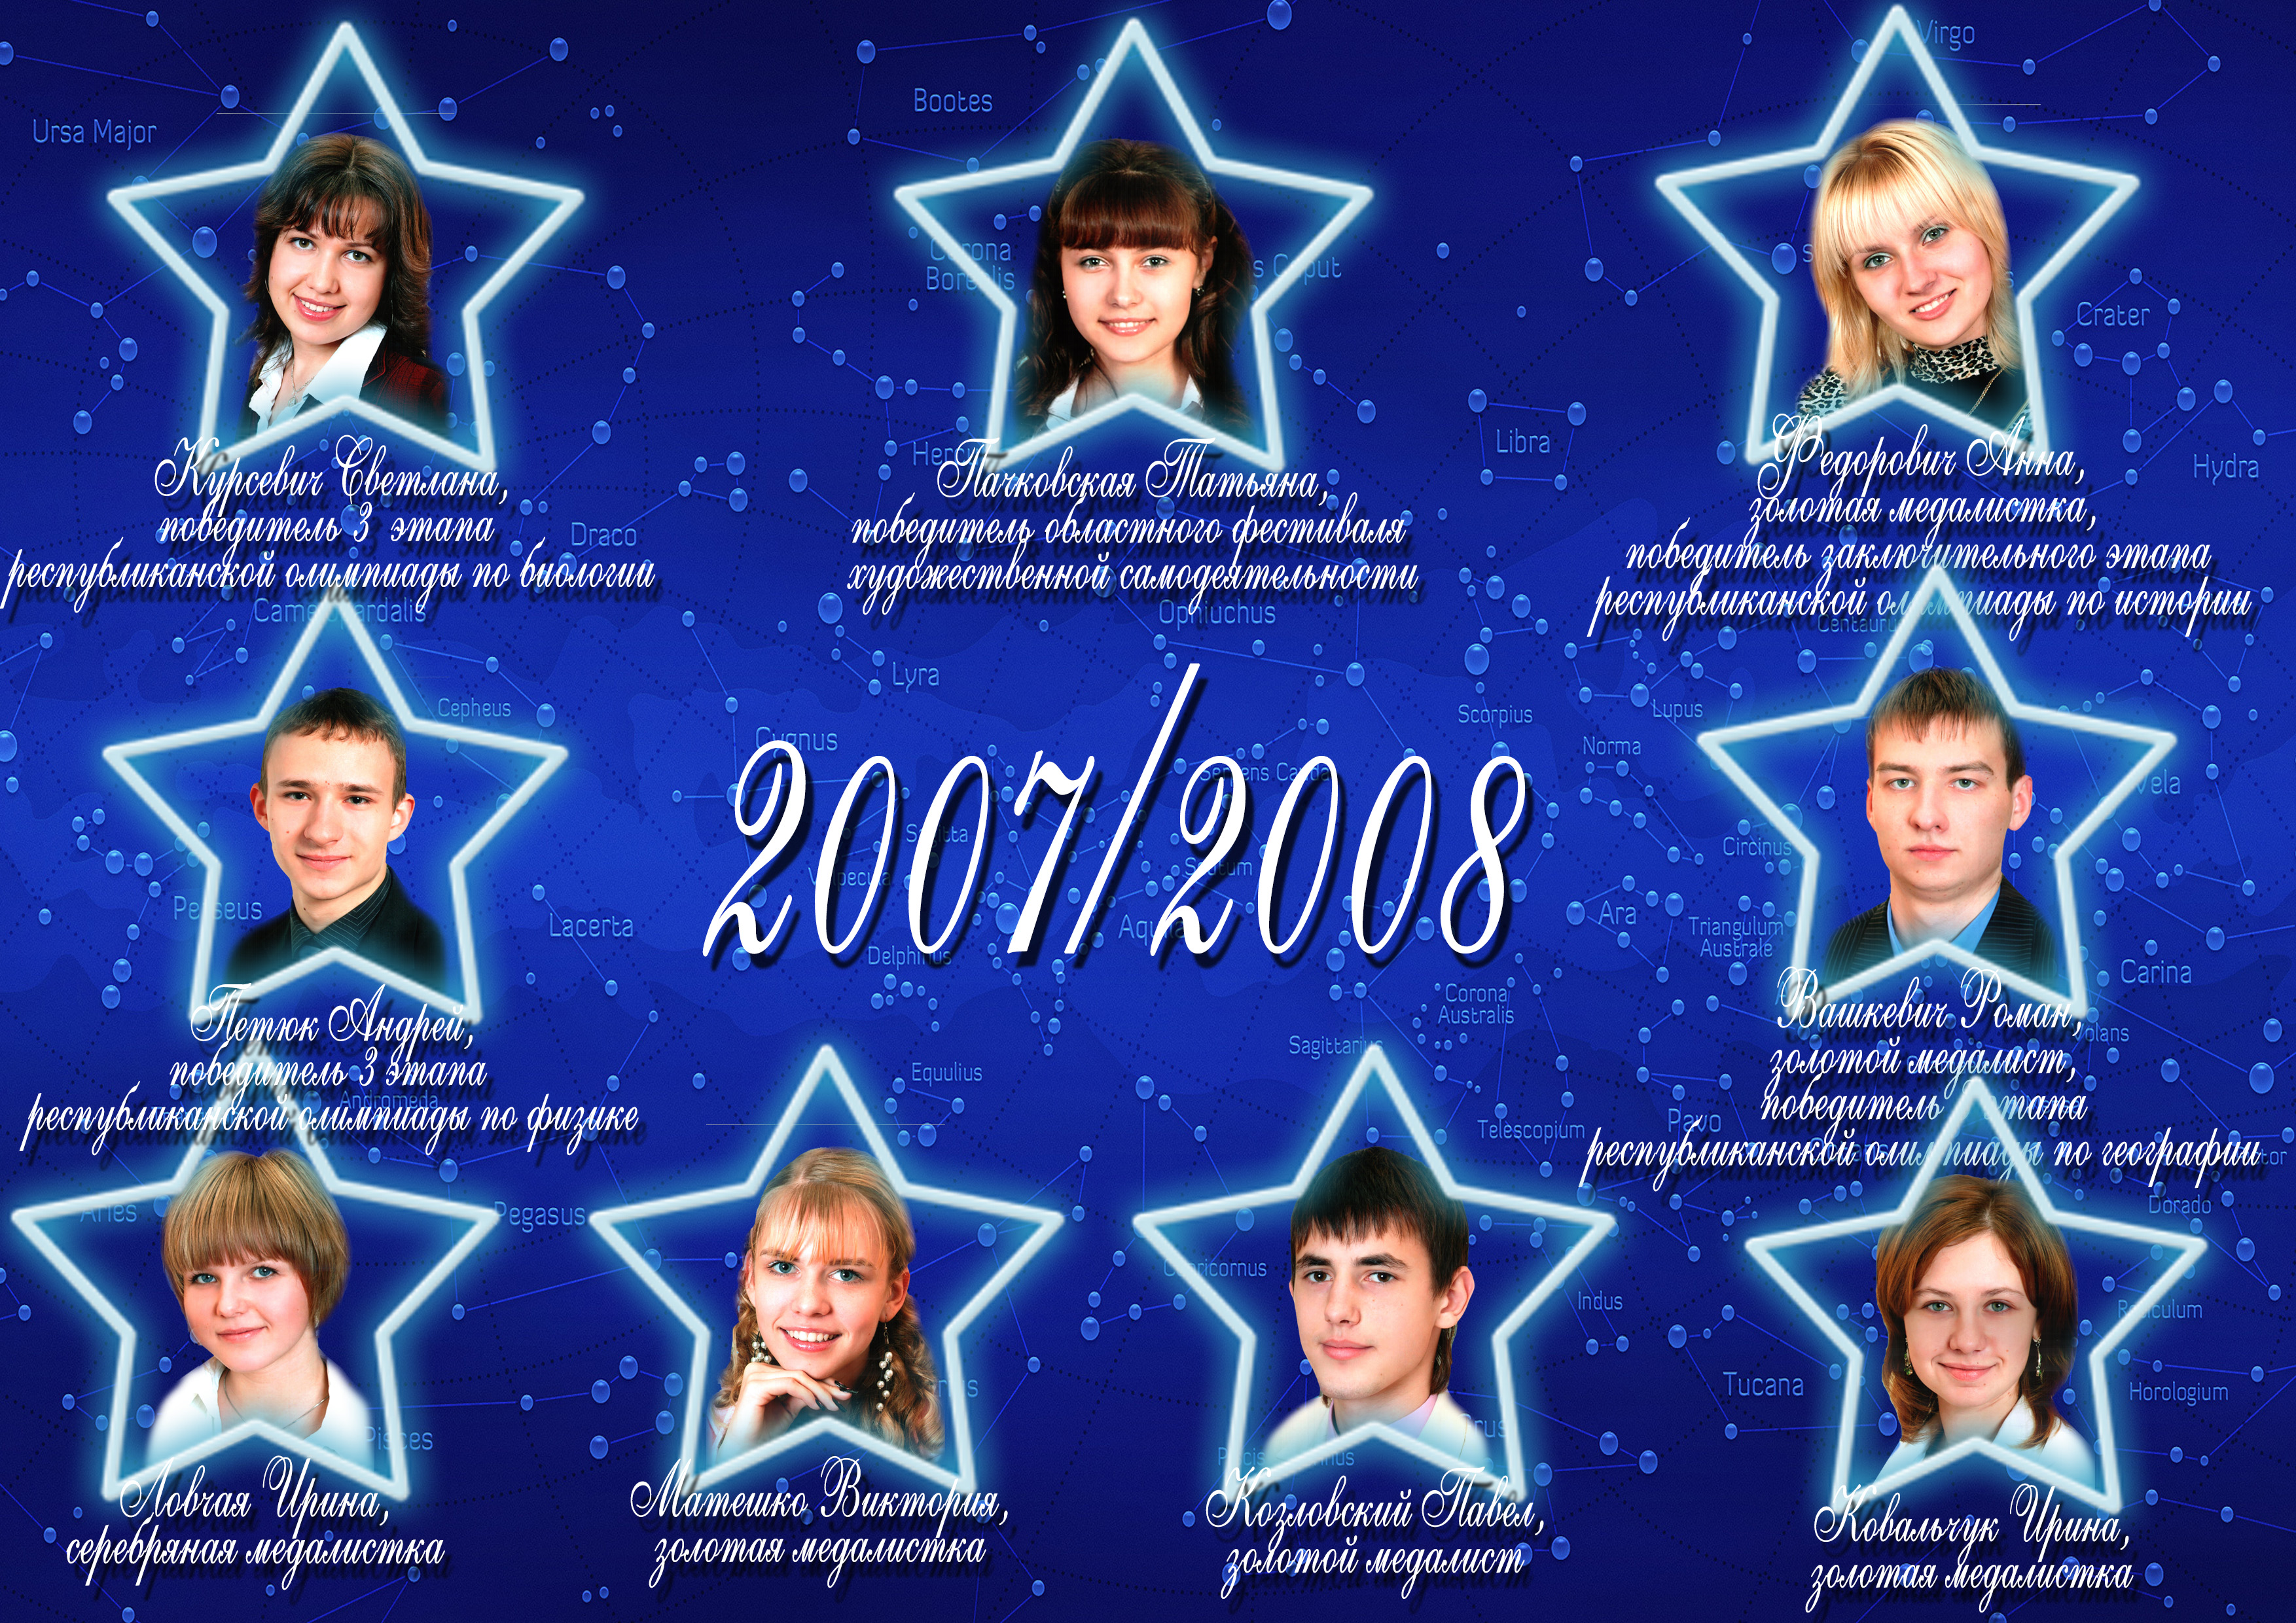 Созвездие лицея 2007/2008 учебного года